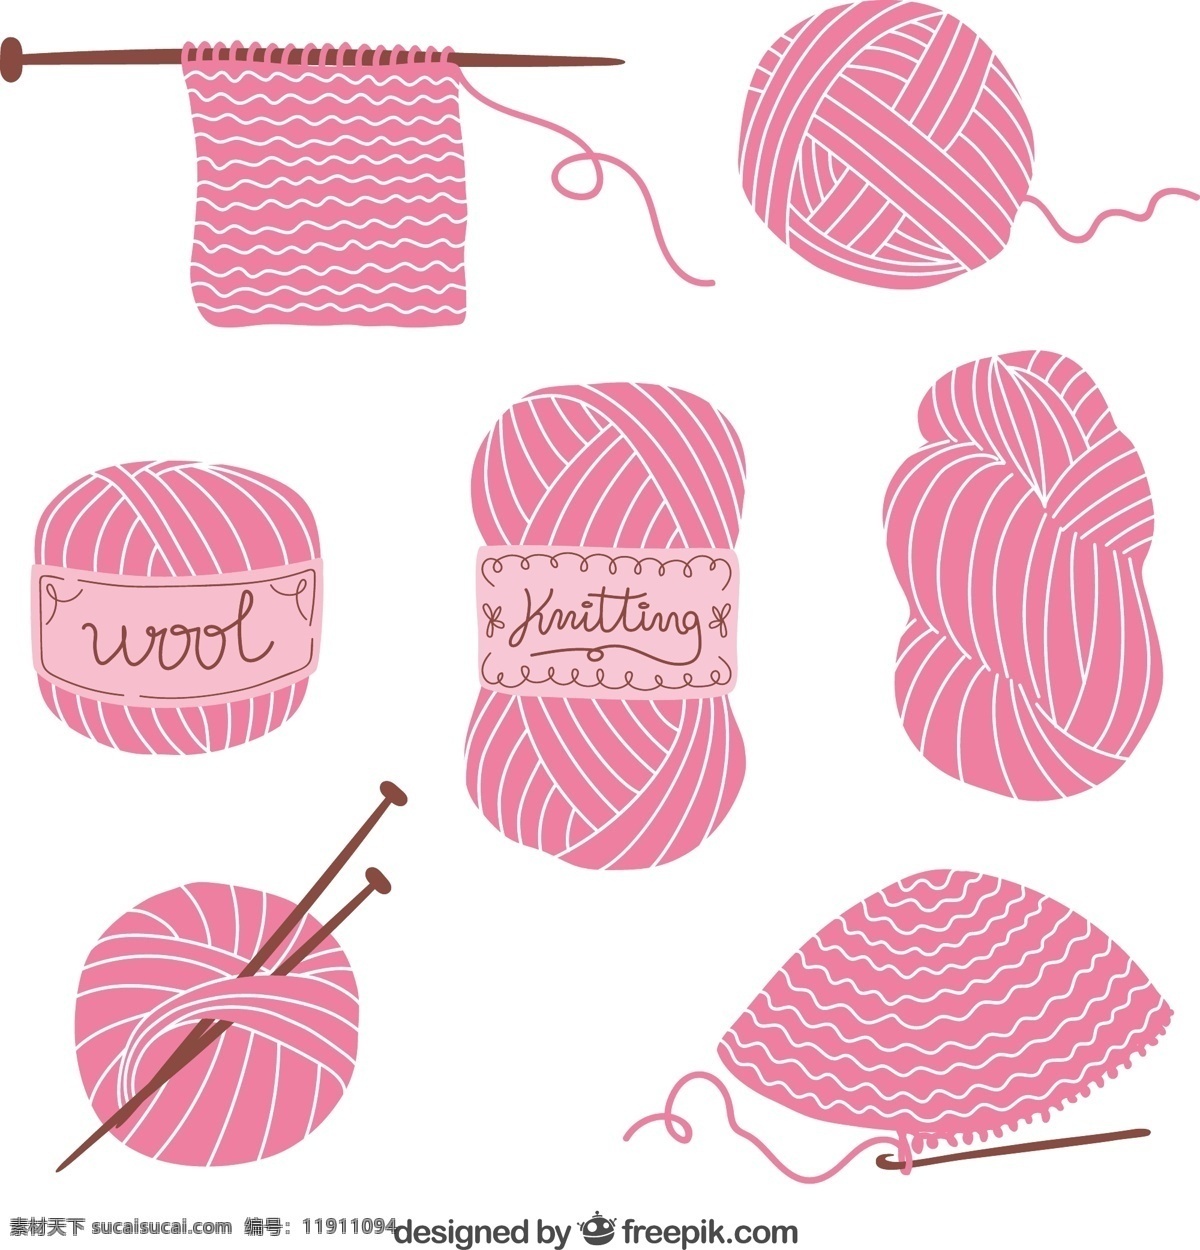 针织元素背景 粉红色 绘图 手工制作 手工 绘画 编织 羊毛 纱线 抽纱 针织